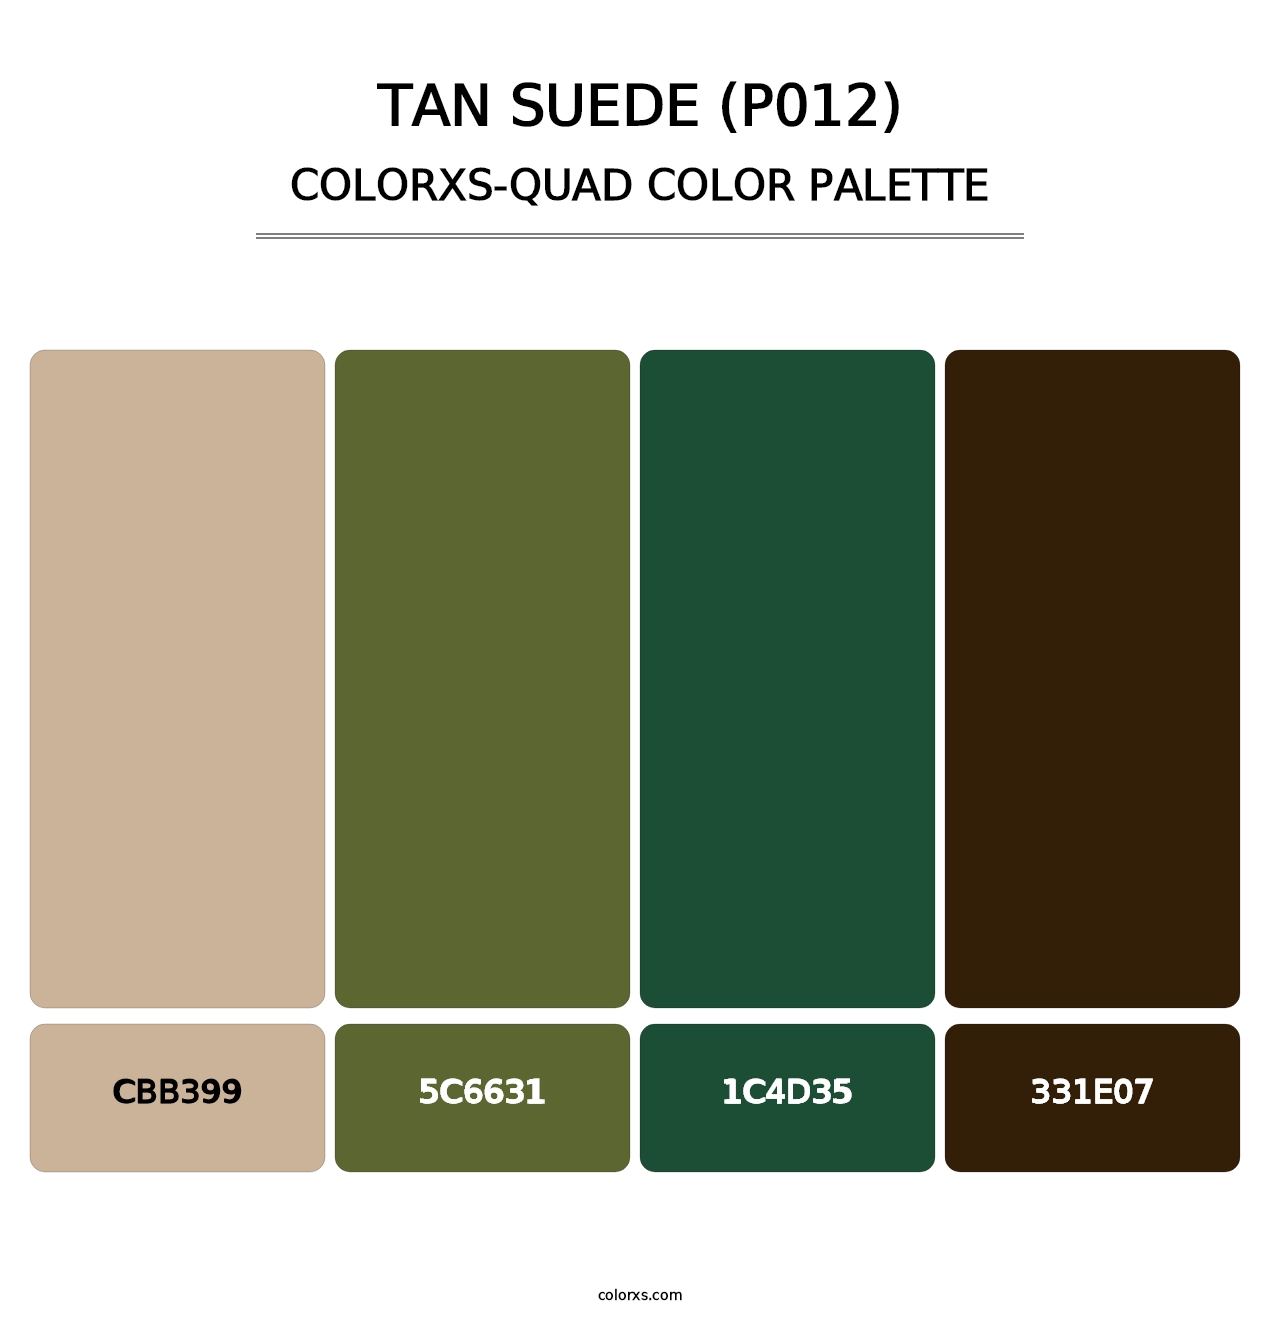 Tan Suede (P012) - Colorxs Quad Palette